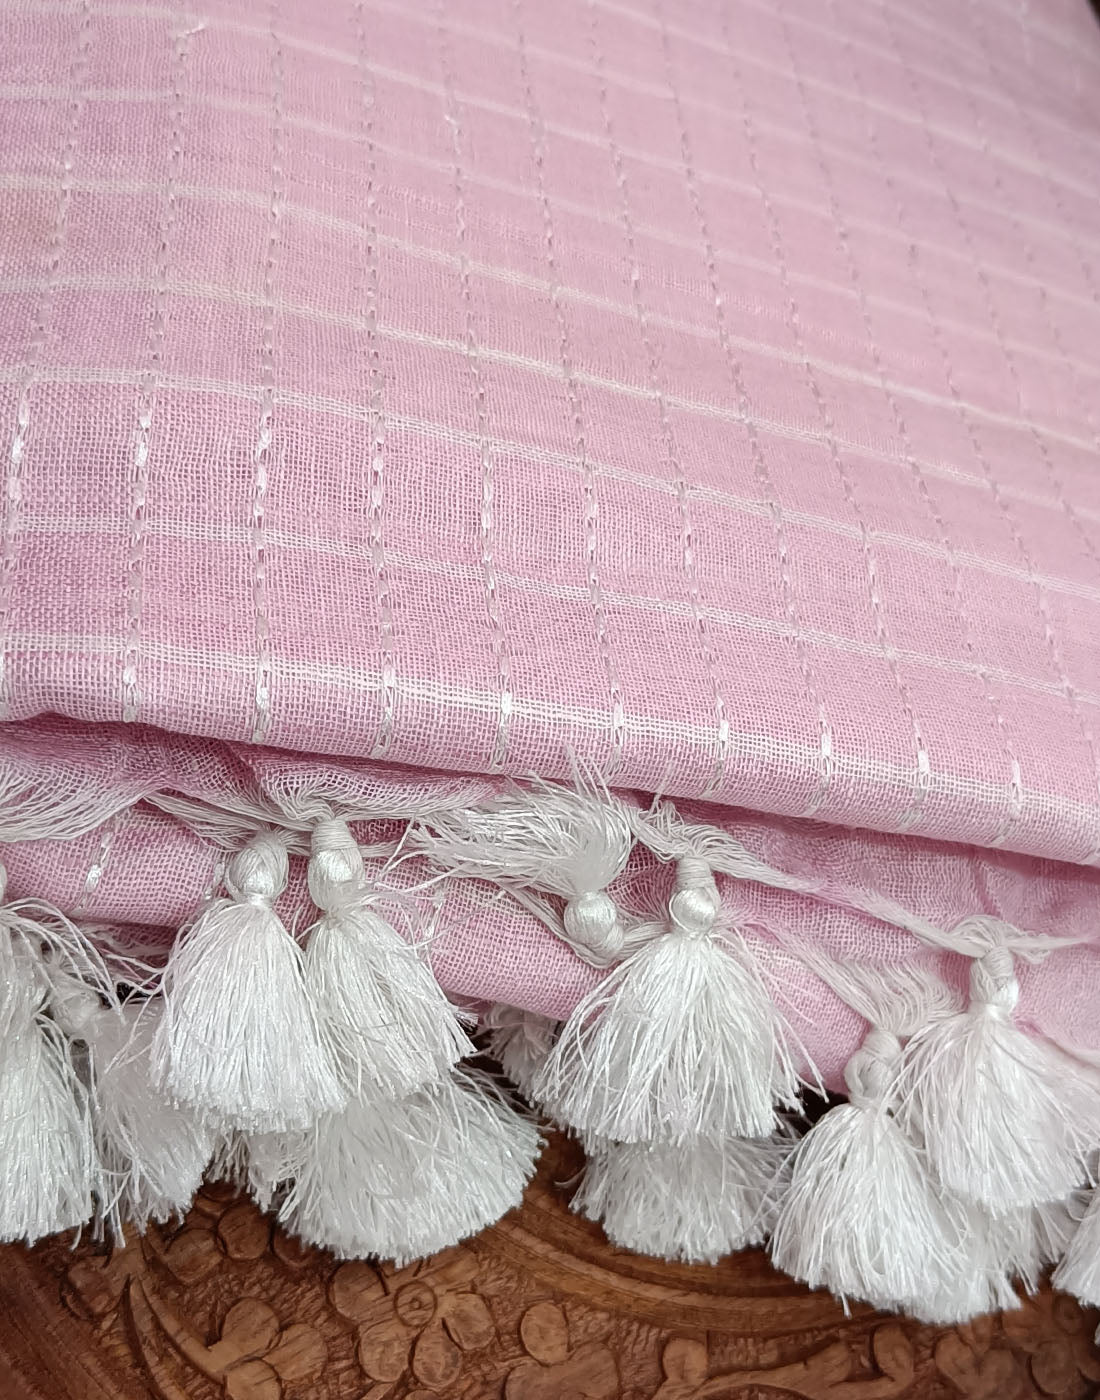 Cotton Saris| Peepal Clothing